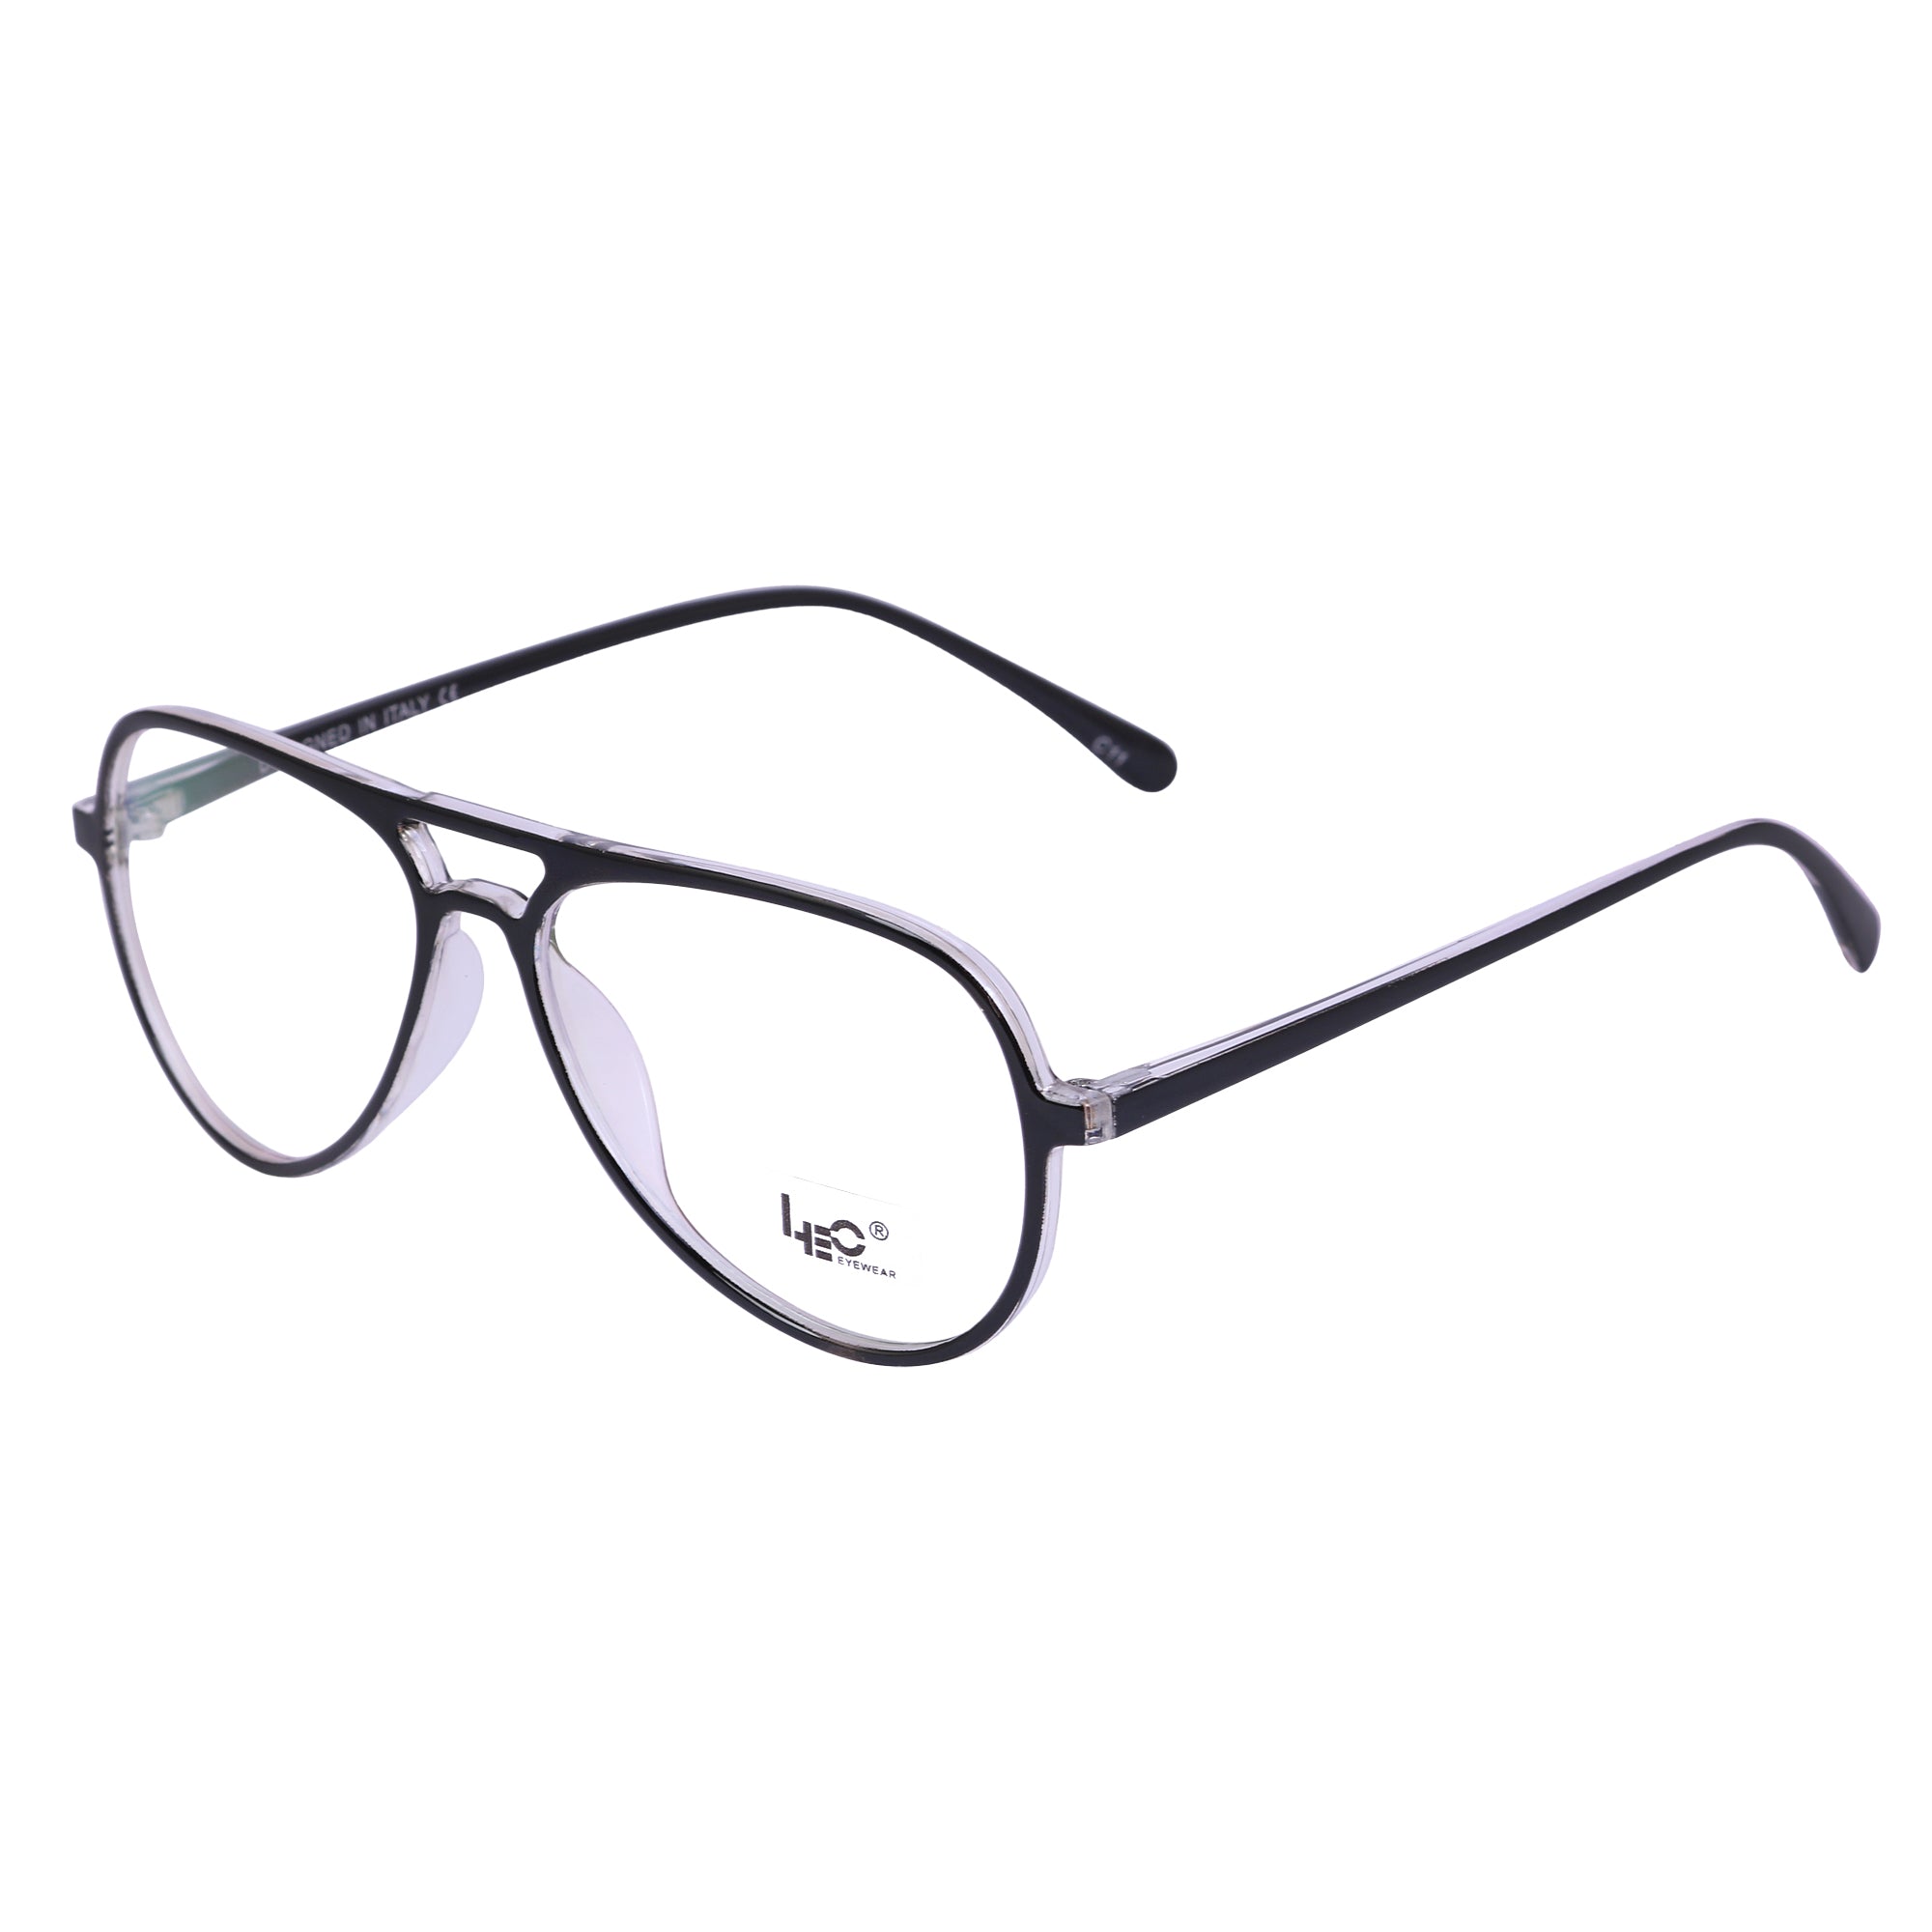 Black & White Rimmed Aviator Eyeglasses - L2788-C11